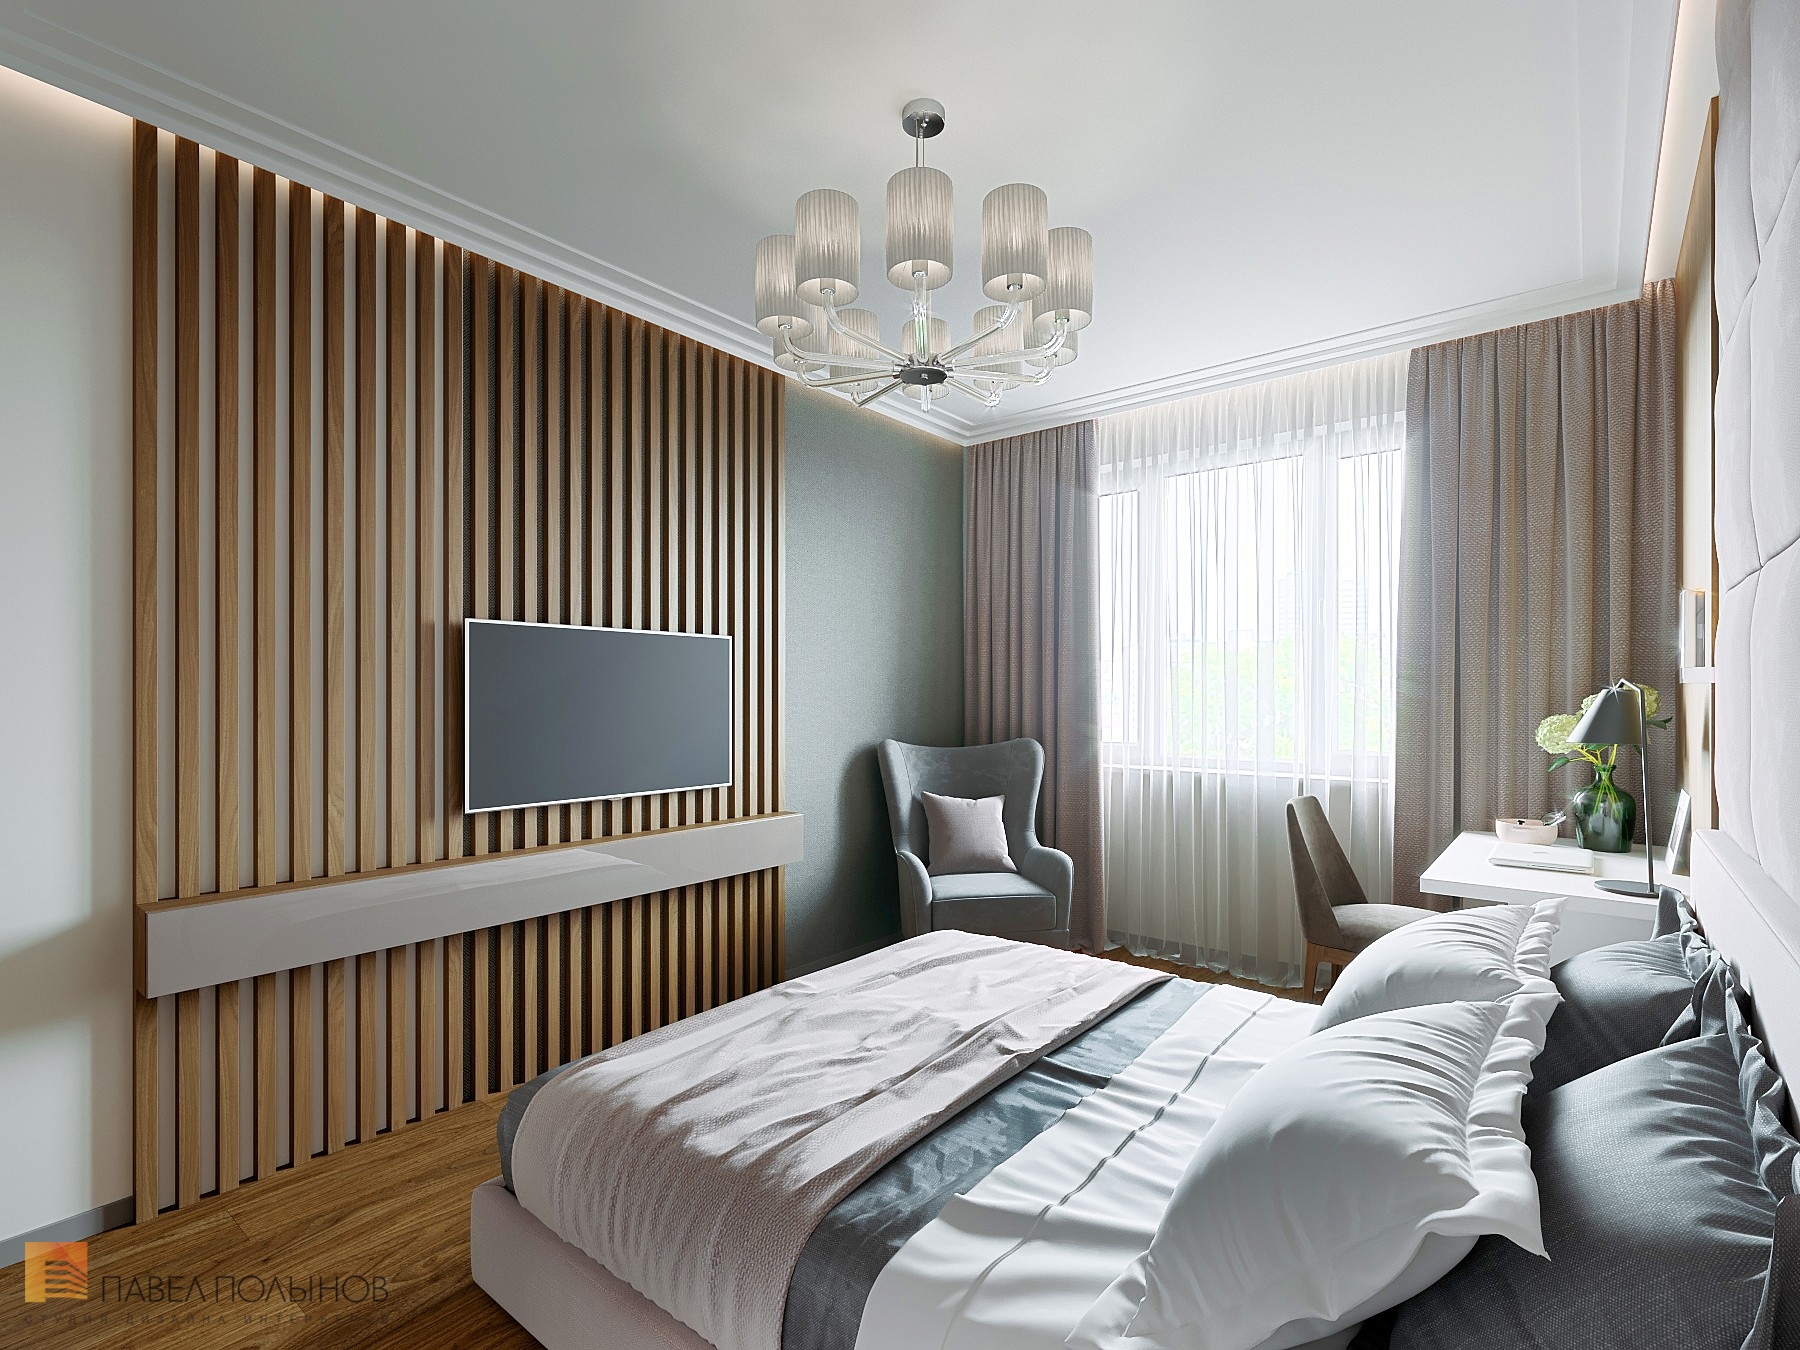 Фото дизайн спальни из проекта «Интерьер квартиры с современном стиле с элементами скандинавского, ЖК «Skandi Klubb», 77 кв.м.»